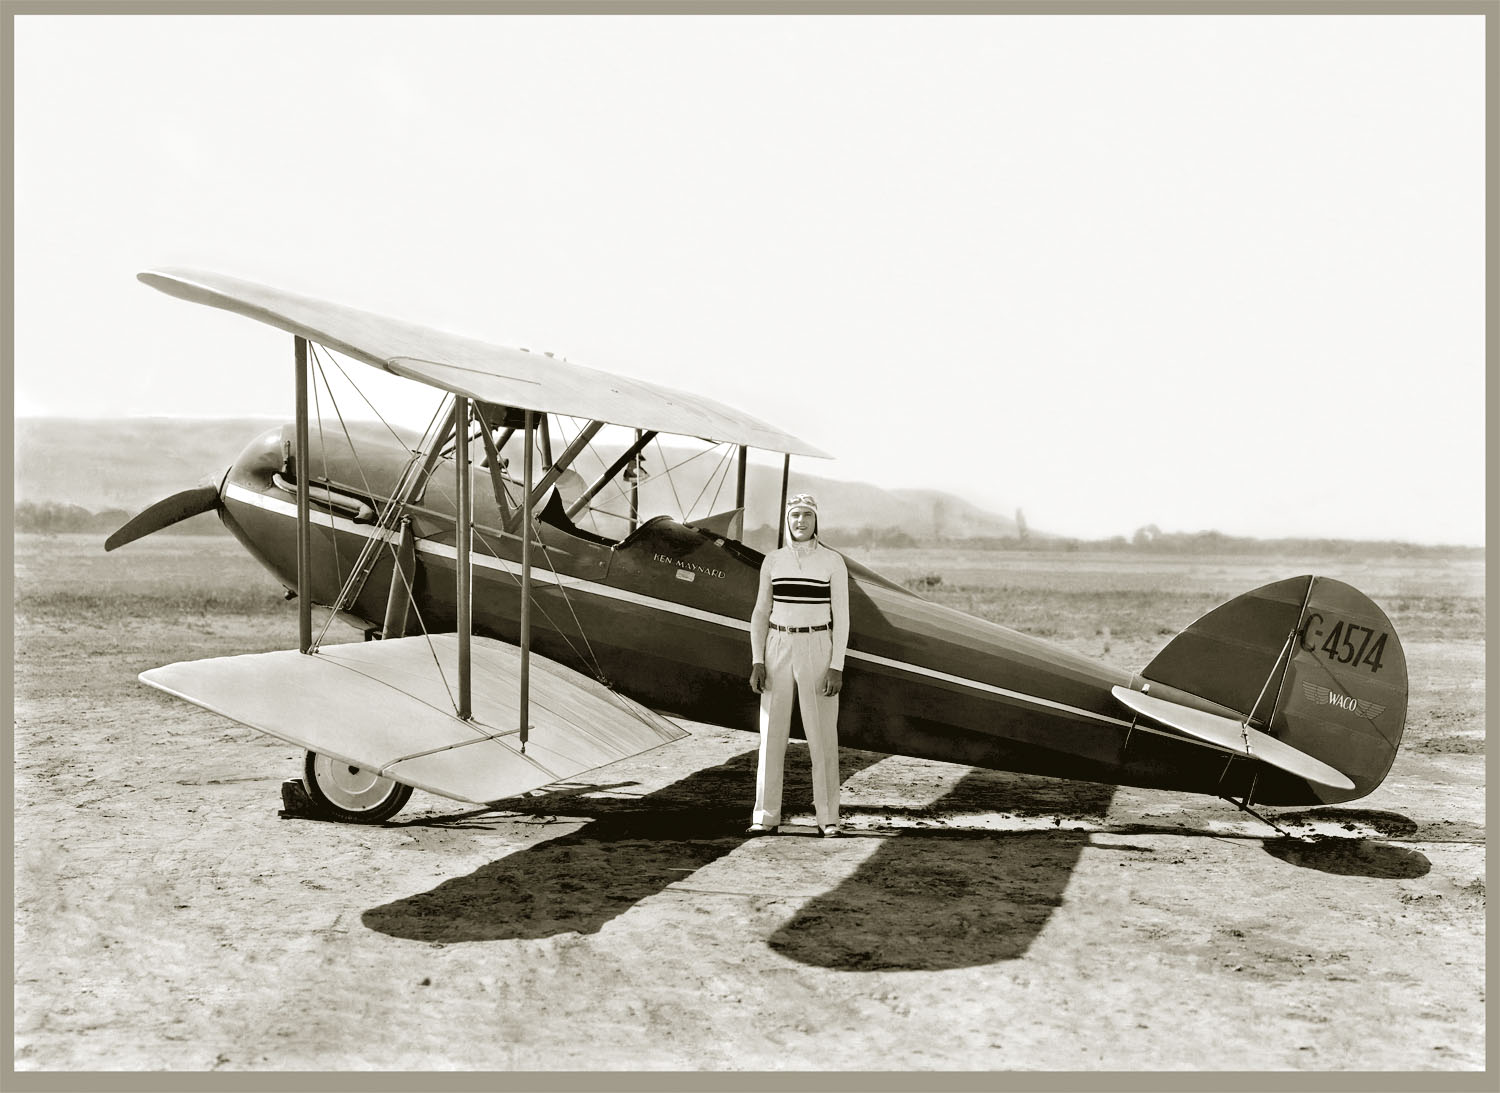 Ken Maynard with Biplane c. 1925 from original 8x10 negative